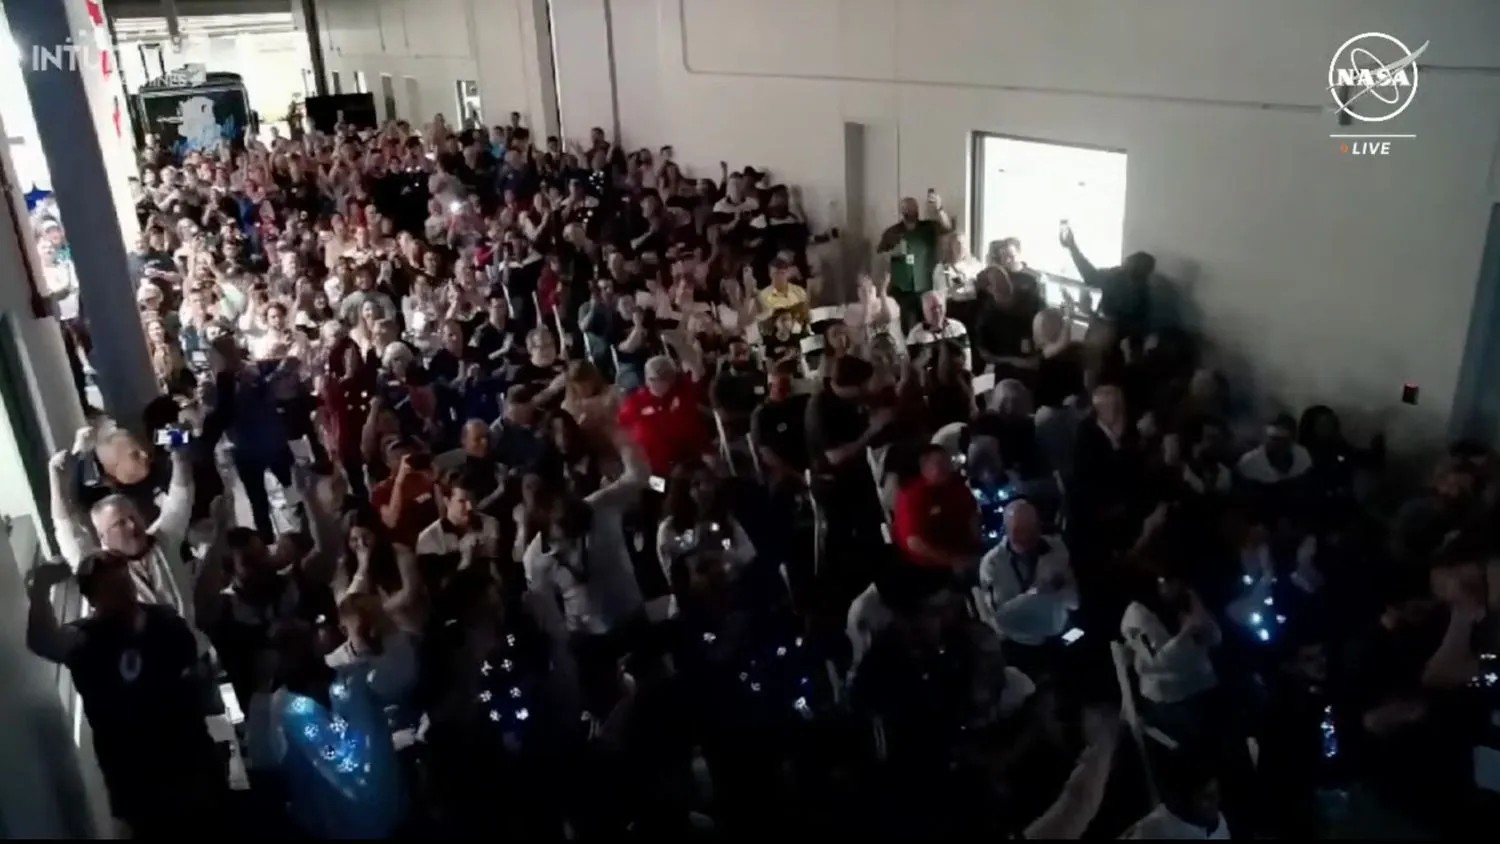 eine Menschenmenge in einem überfüllten Raum feiert, winkt mit den Armen und klatscht ab